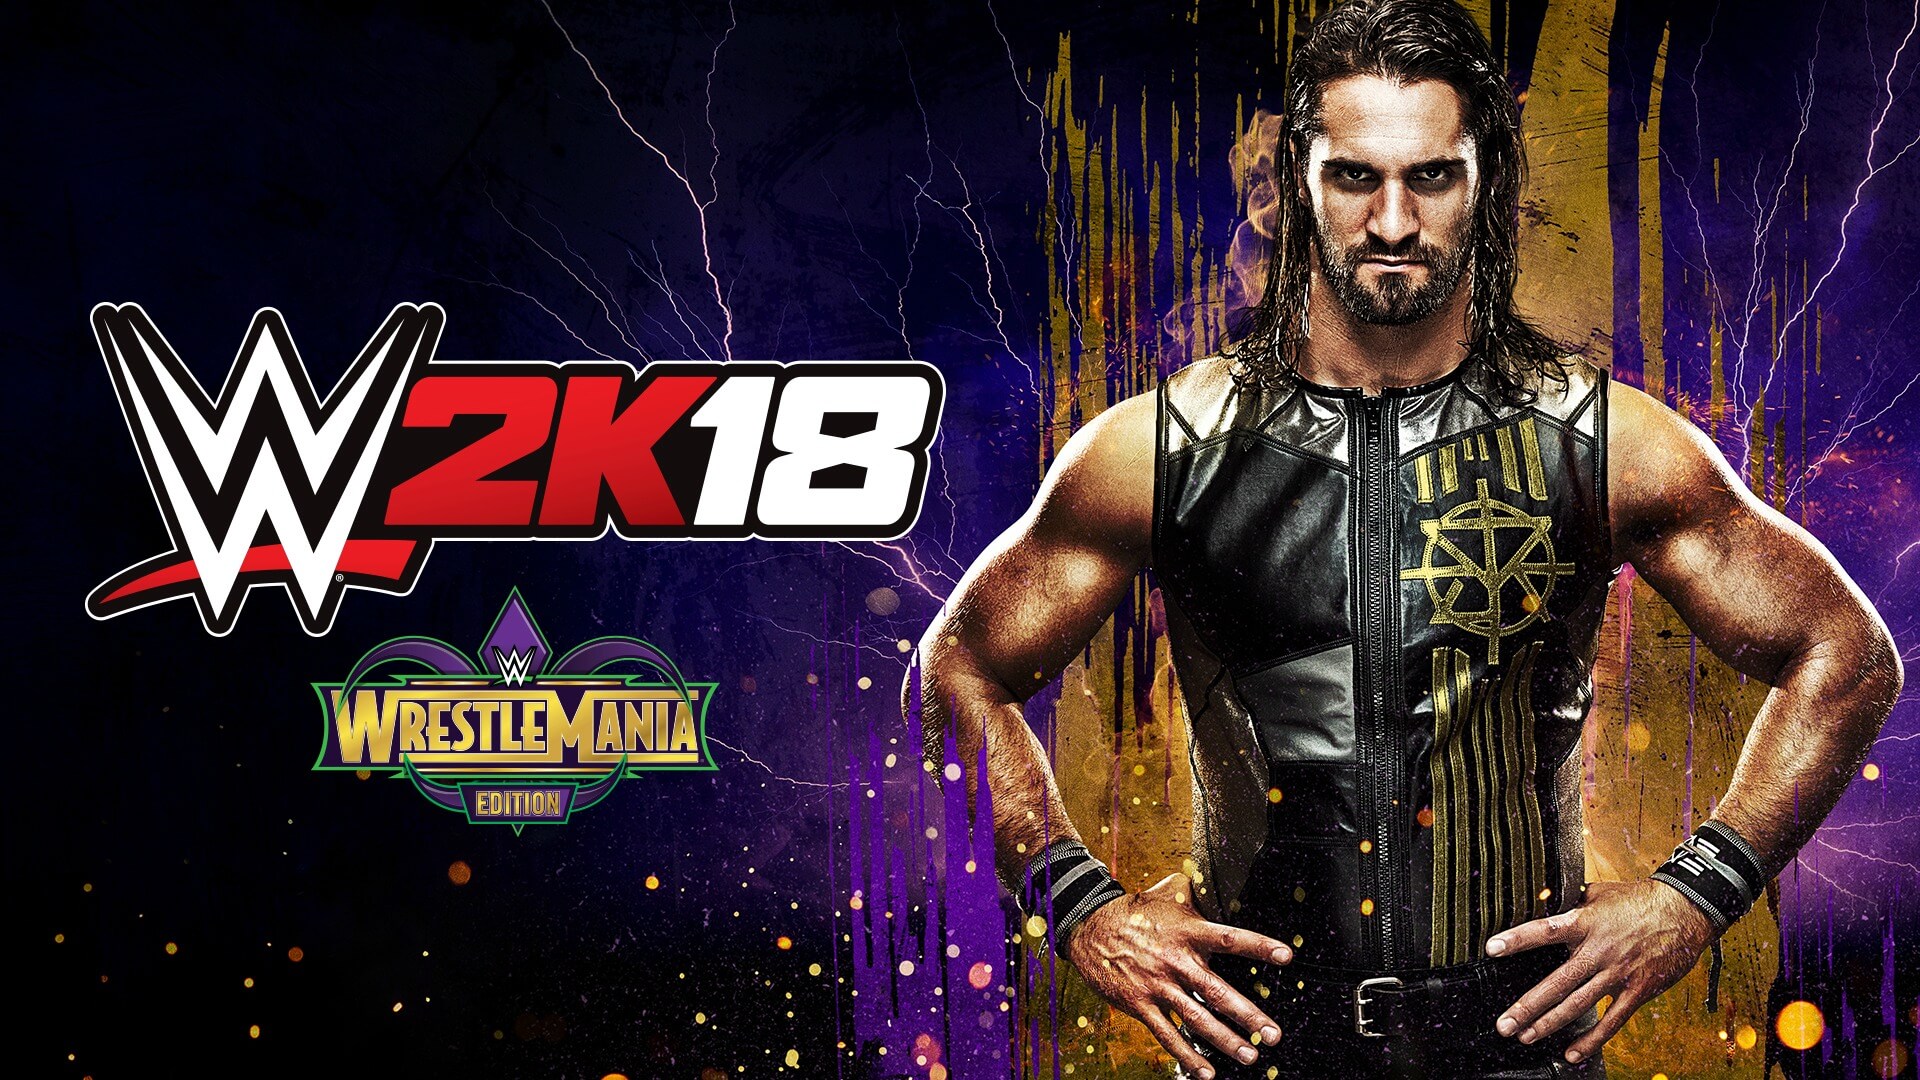 2K anuncia WWE 2K18: Edición WrestleMania para el 23 de marzo en PS4 y Xbox One